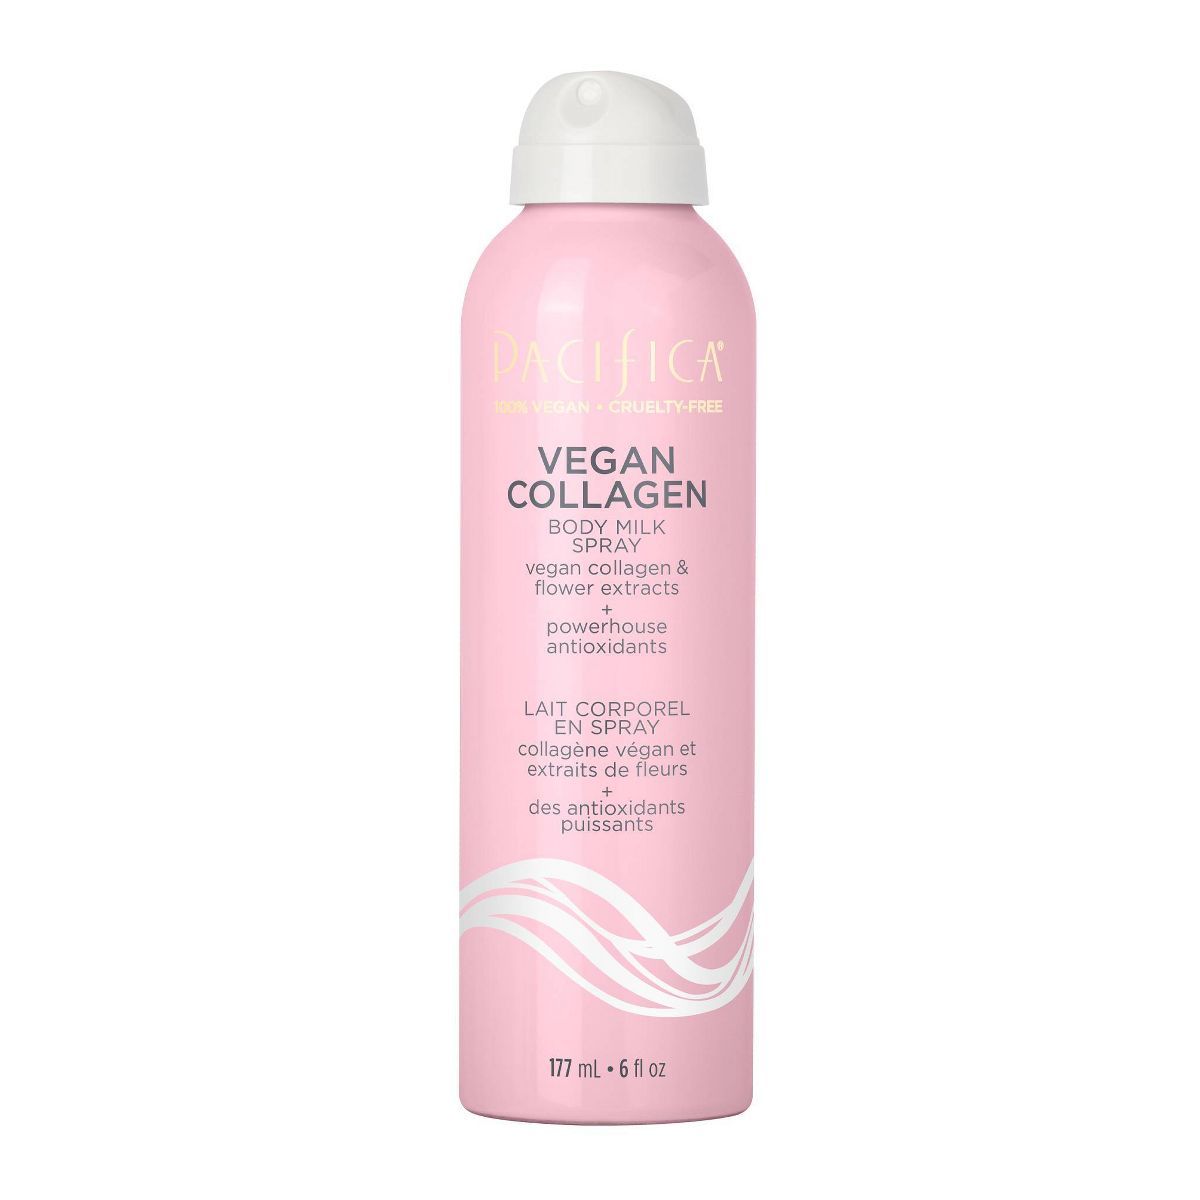 Pacifica Vegan Collagen Body Milk Spray Floral - 6 fl oz | Target